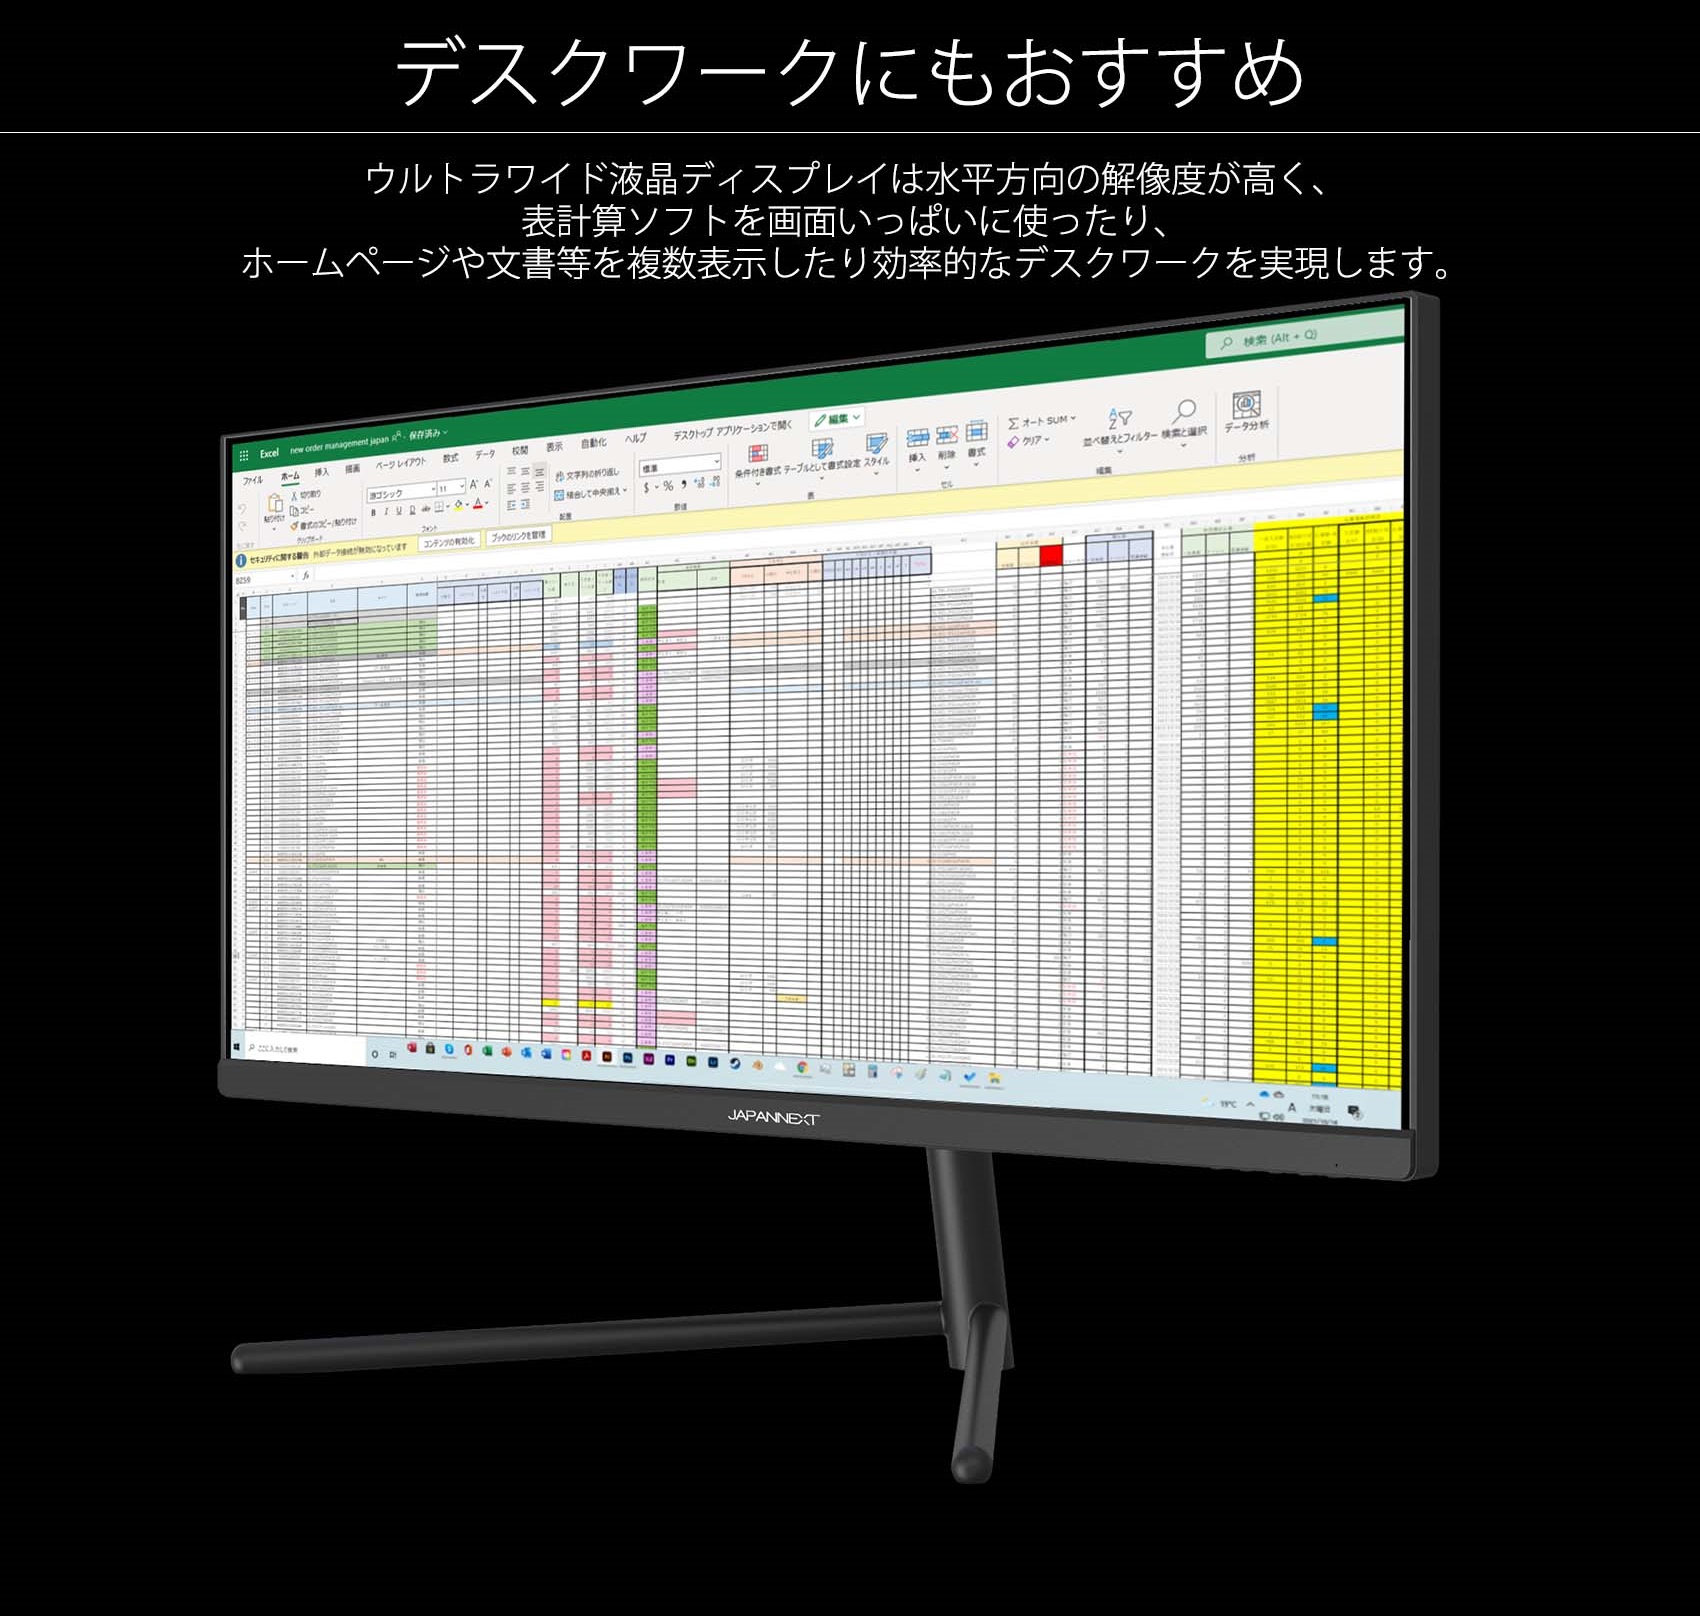 JAPANNEXT 30インチ ワイドFHD(2560 x 1080) 液晶モニター JN